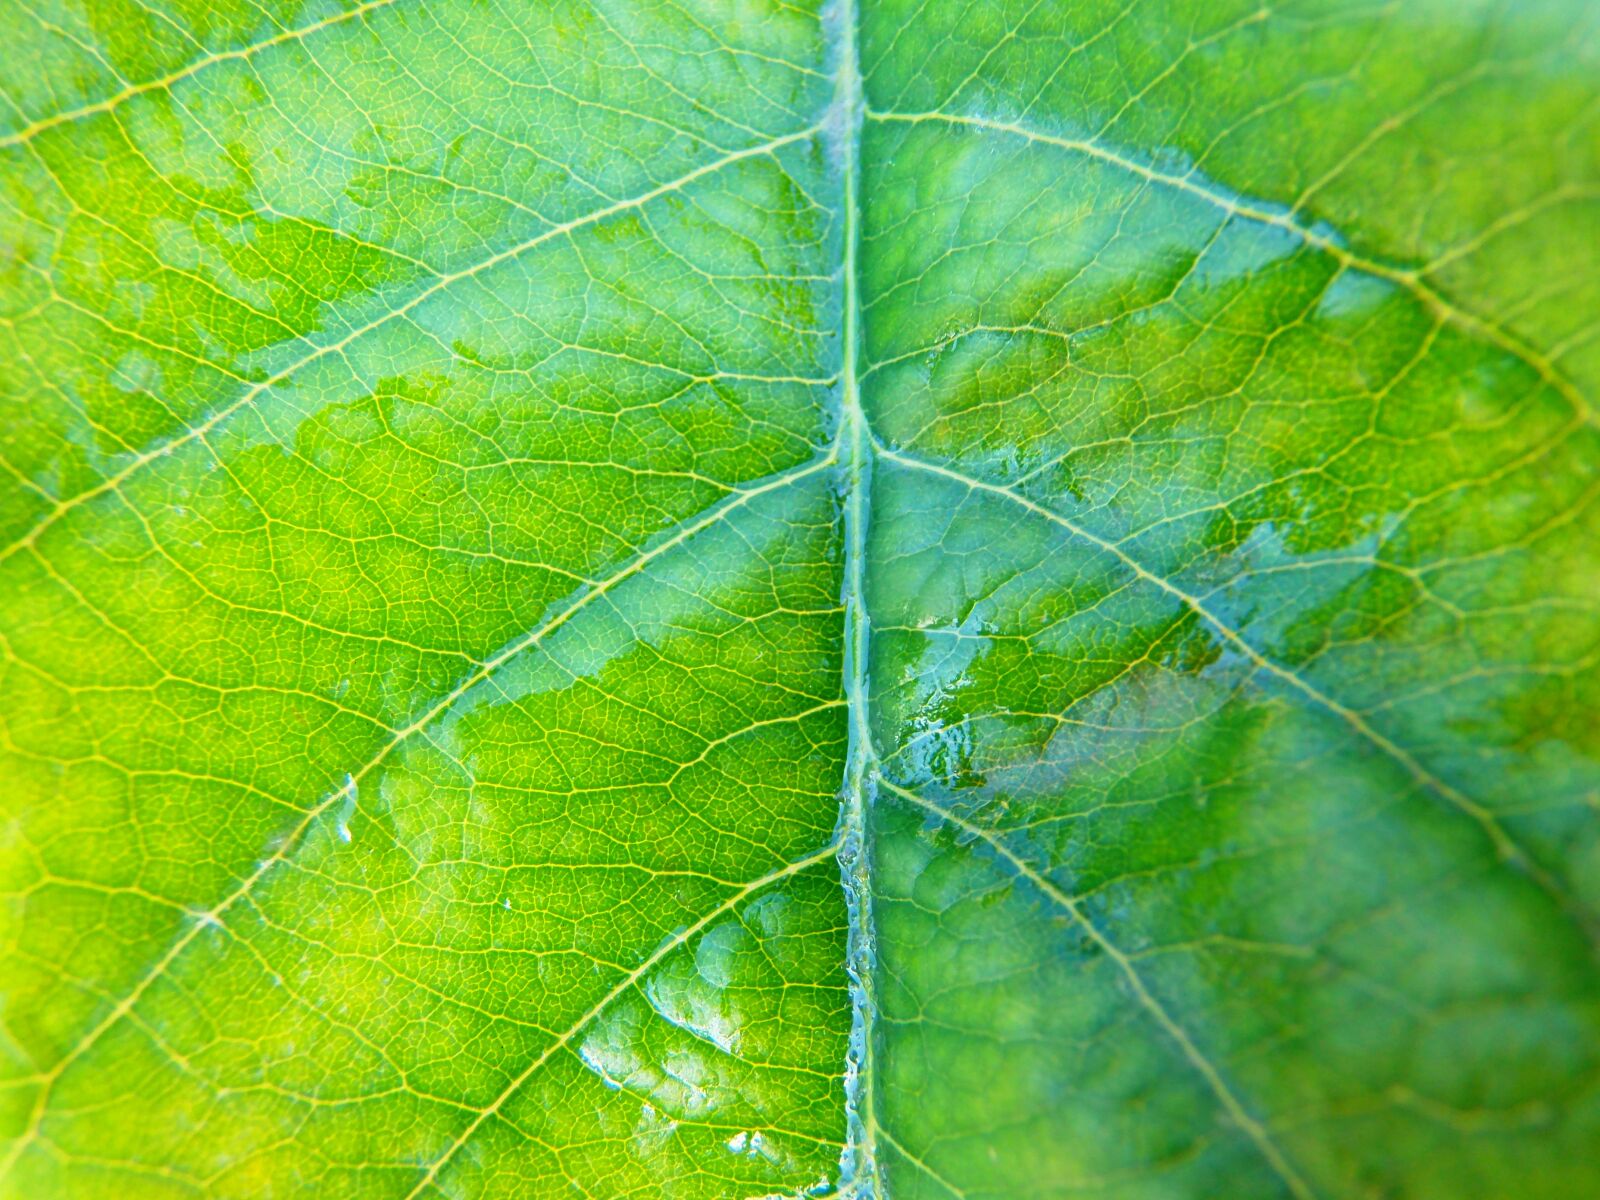 Olympus SP-720UZ sample photo. Leaf, nature, plant photography